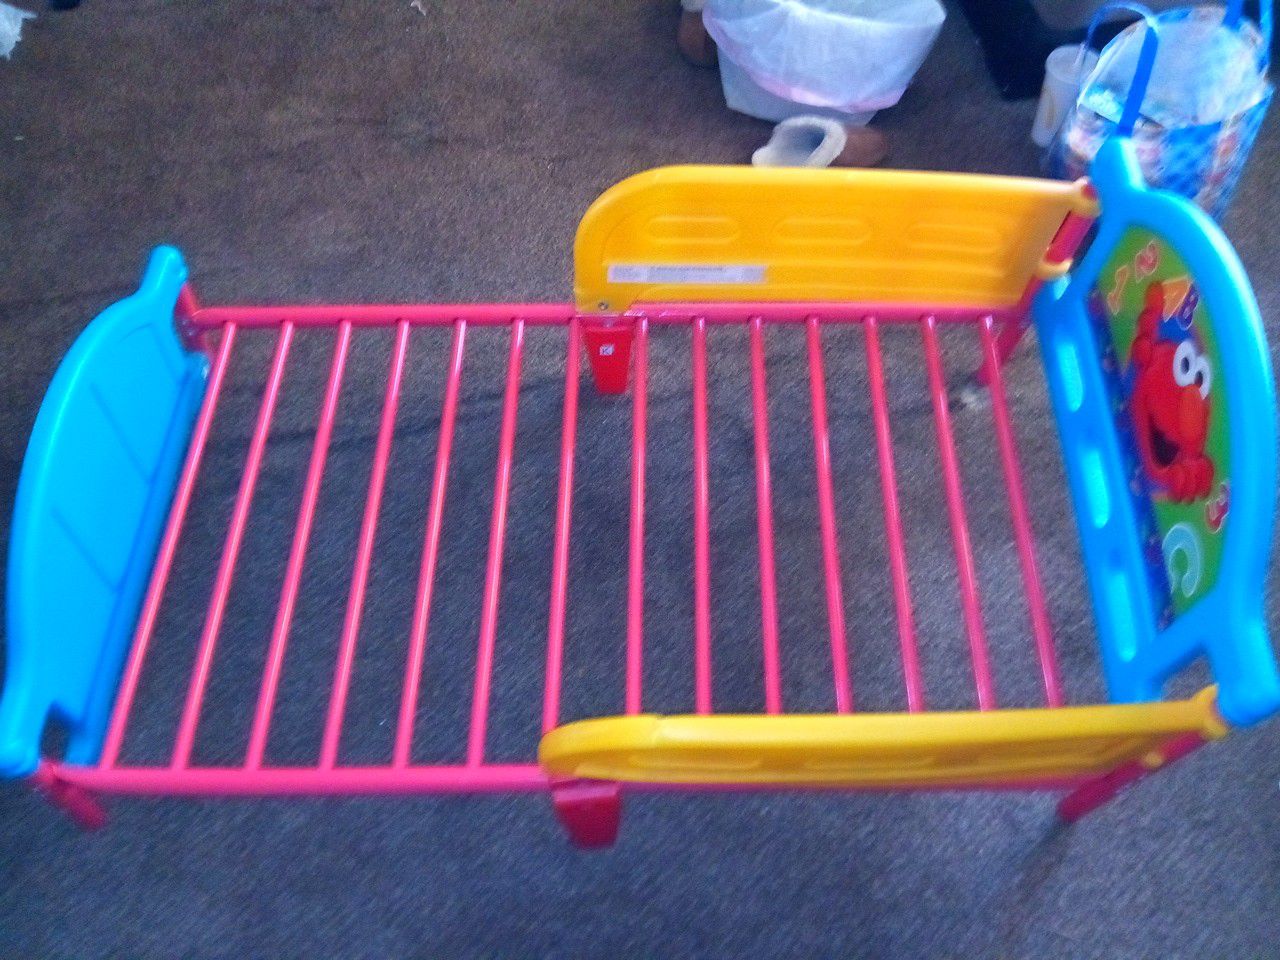 Elmo bed frame for children.